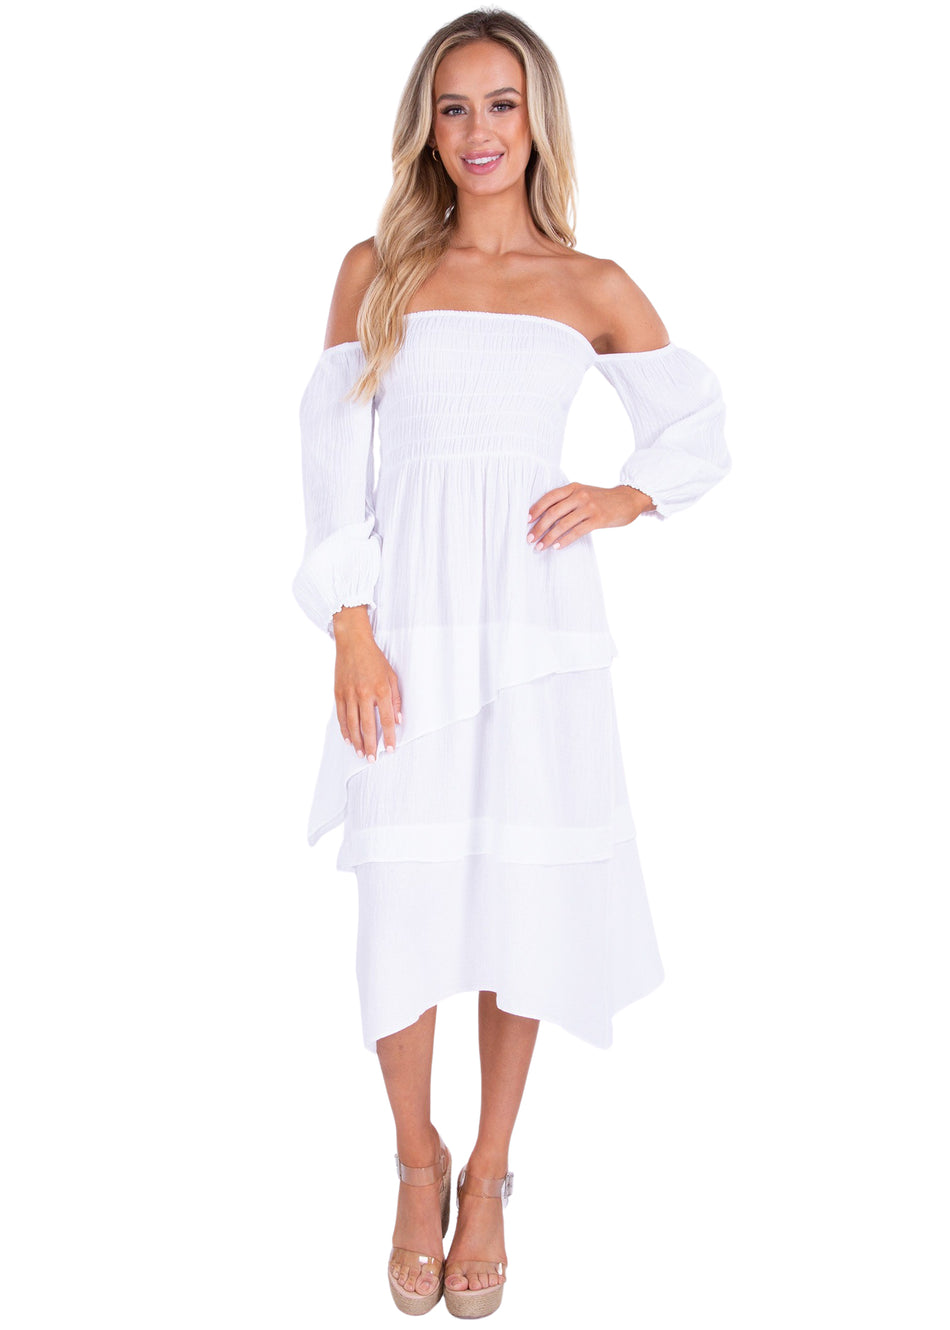 NW1427 - White Cotton Dress